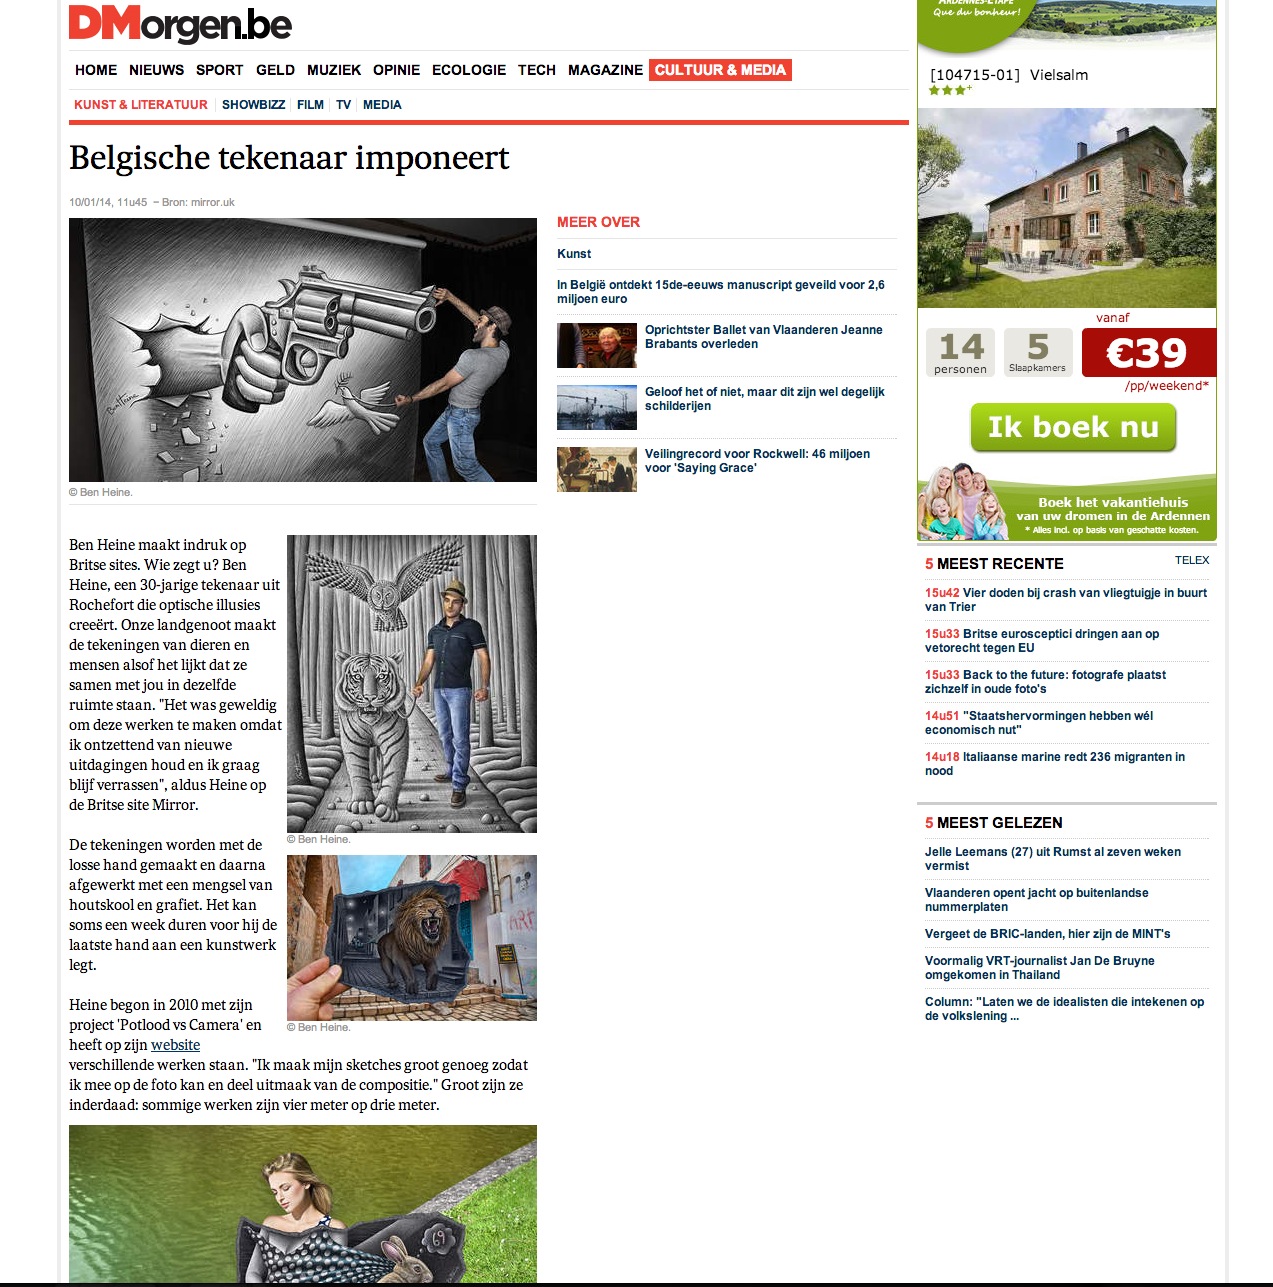 Ben Heine Art - News Article in De Morgen - Belgium (January 2014)